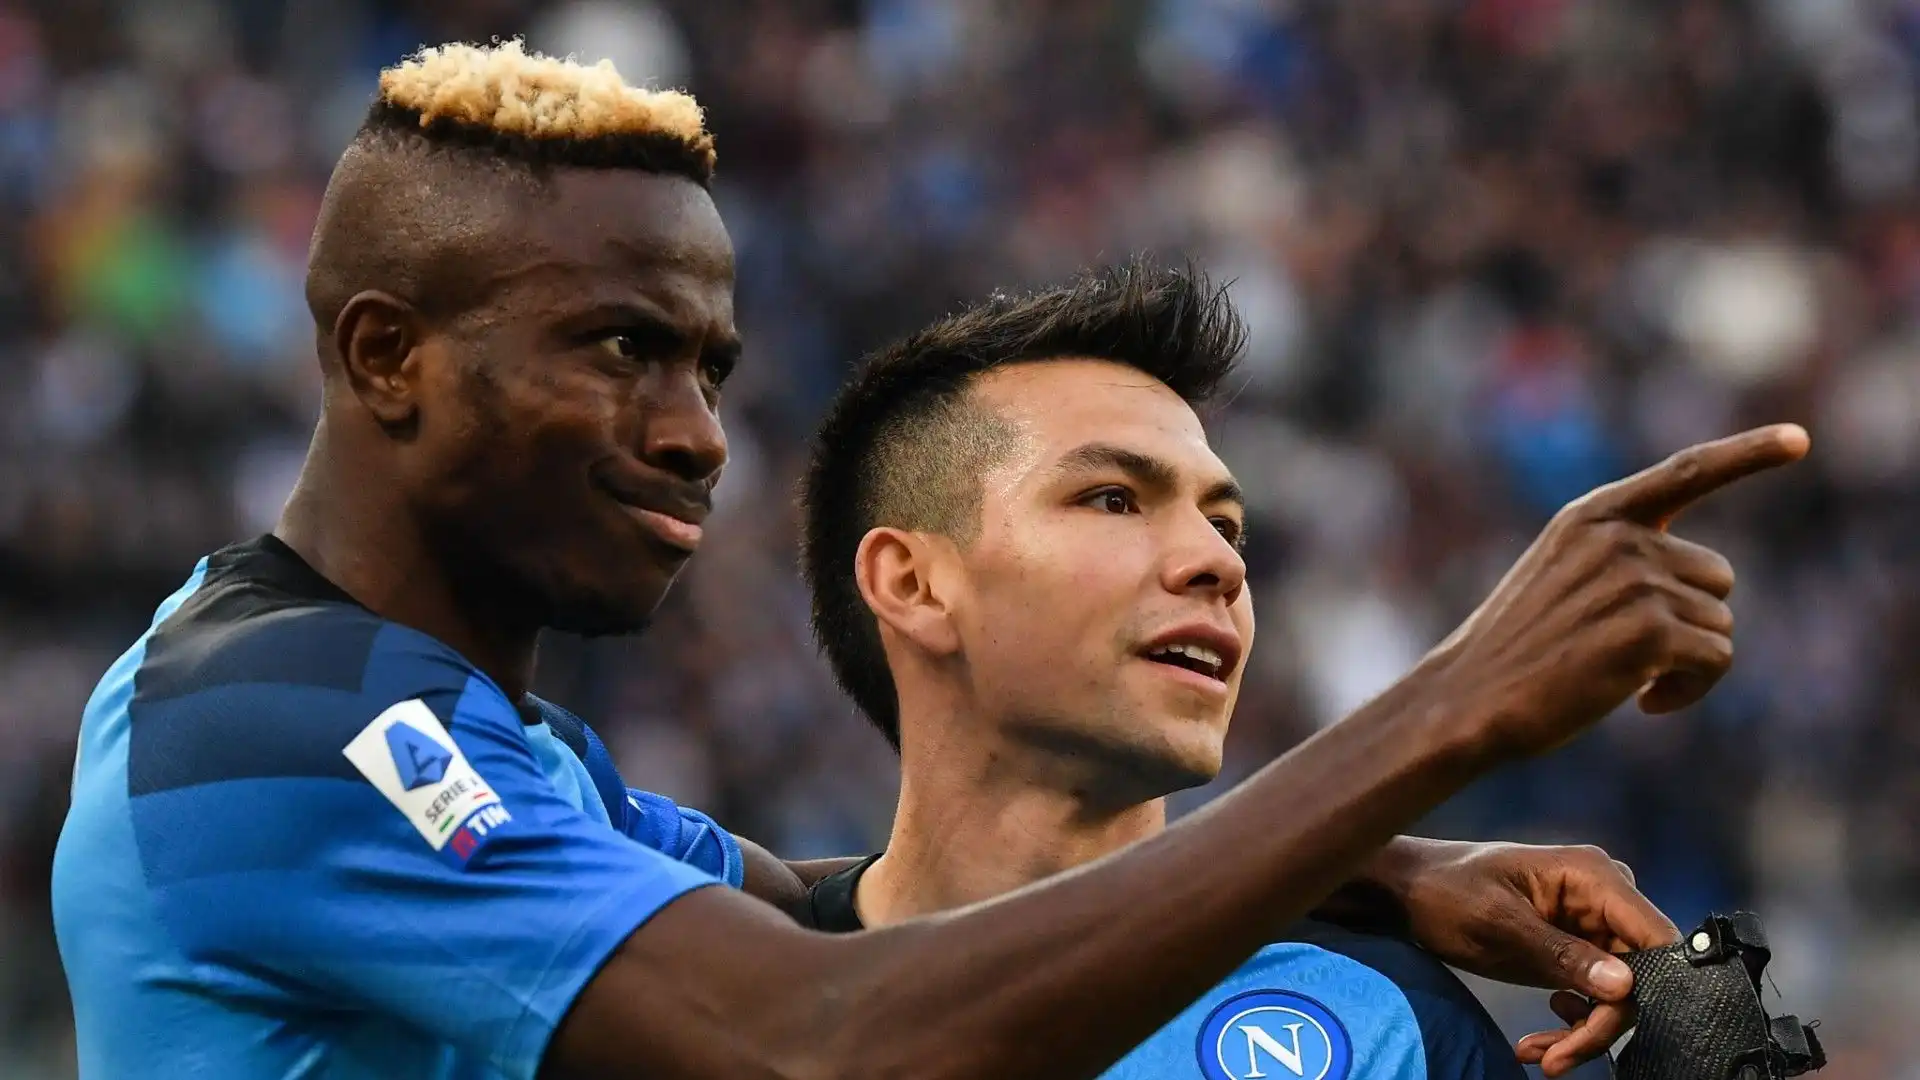 Una grande delusione per il Napoli, che aveva acquistato il calciatore credendo diventasse una bandiera del club